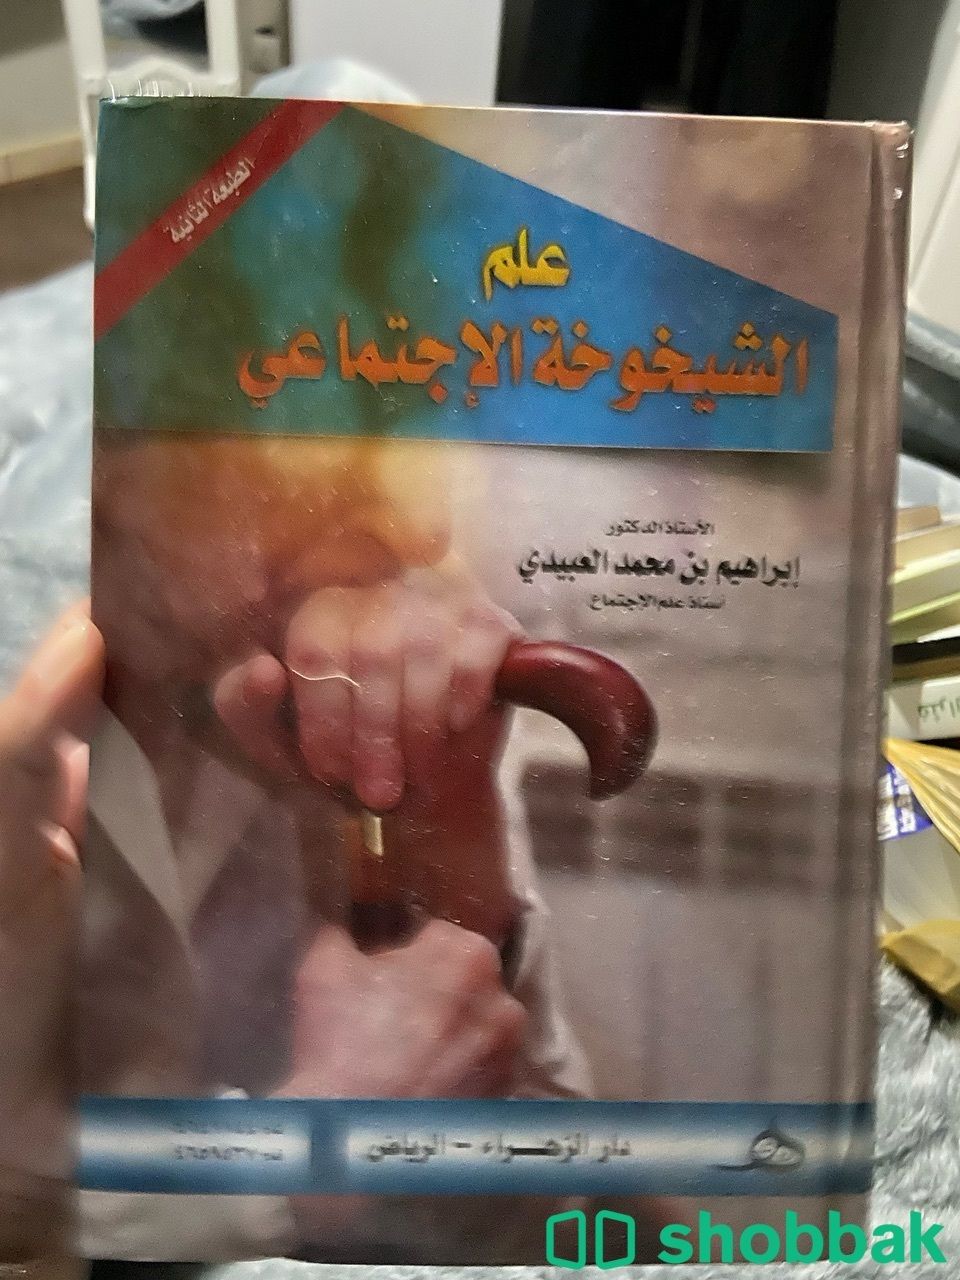 كتب في علم الاجتماع  Shobbak Saudi Arabia